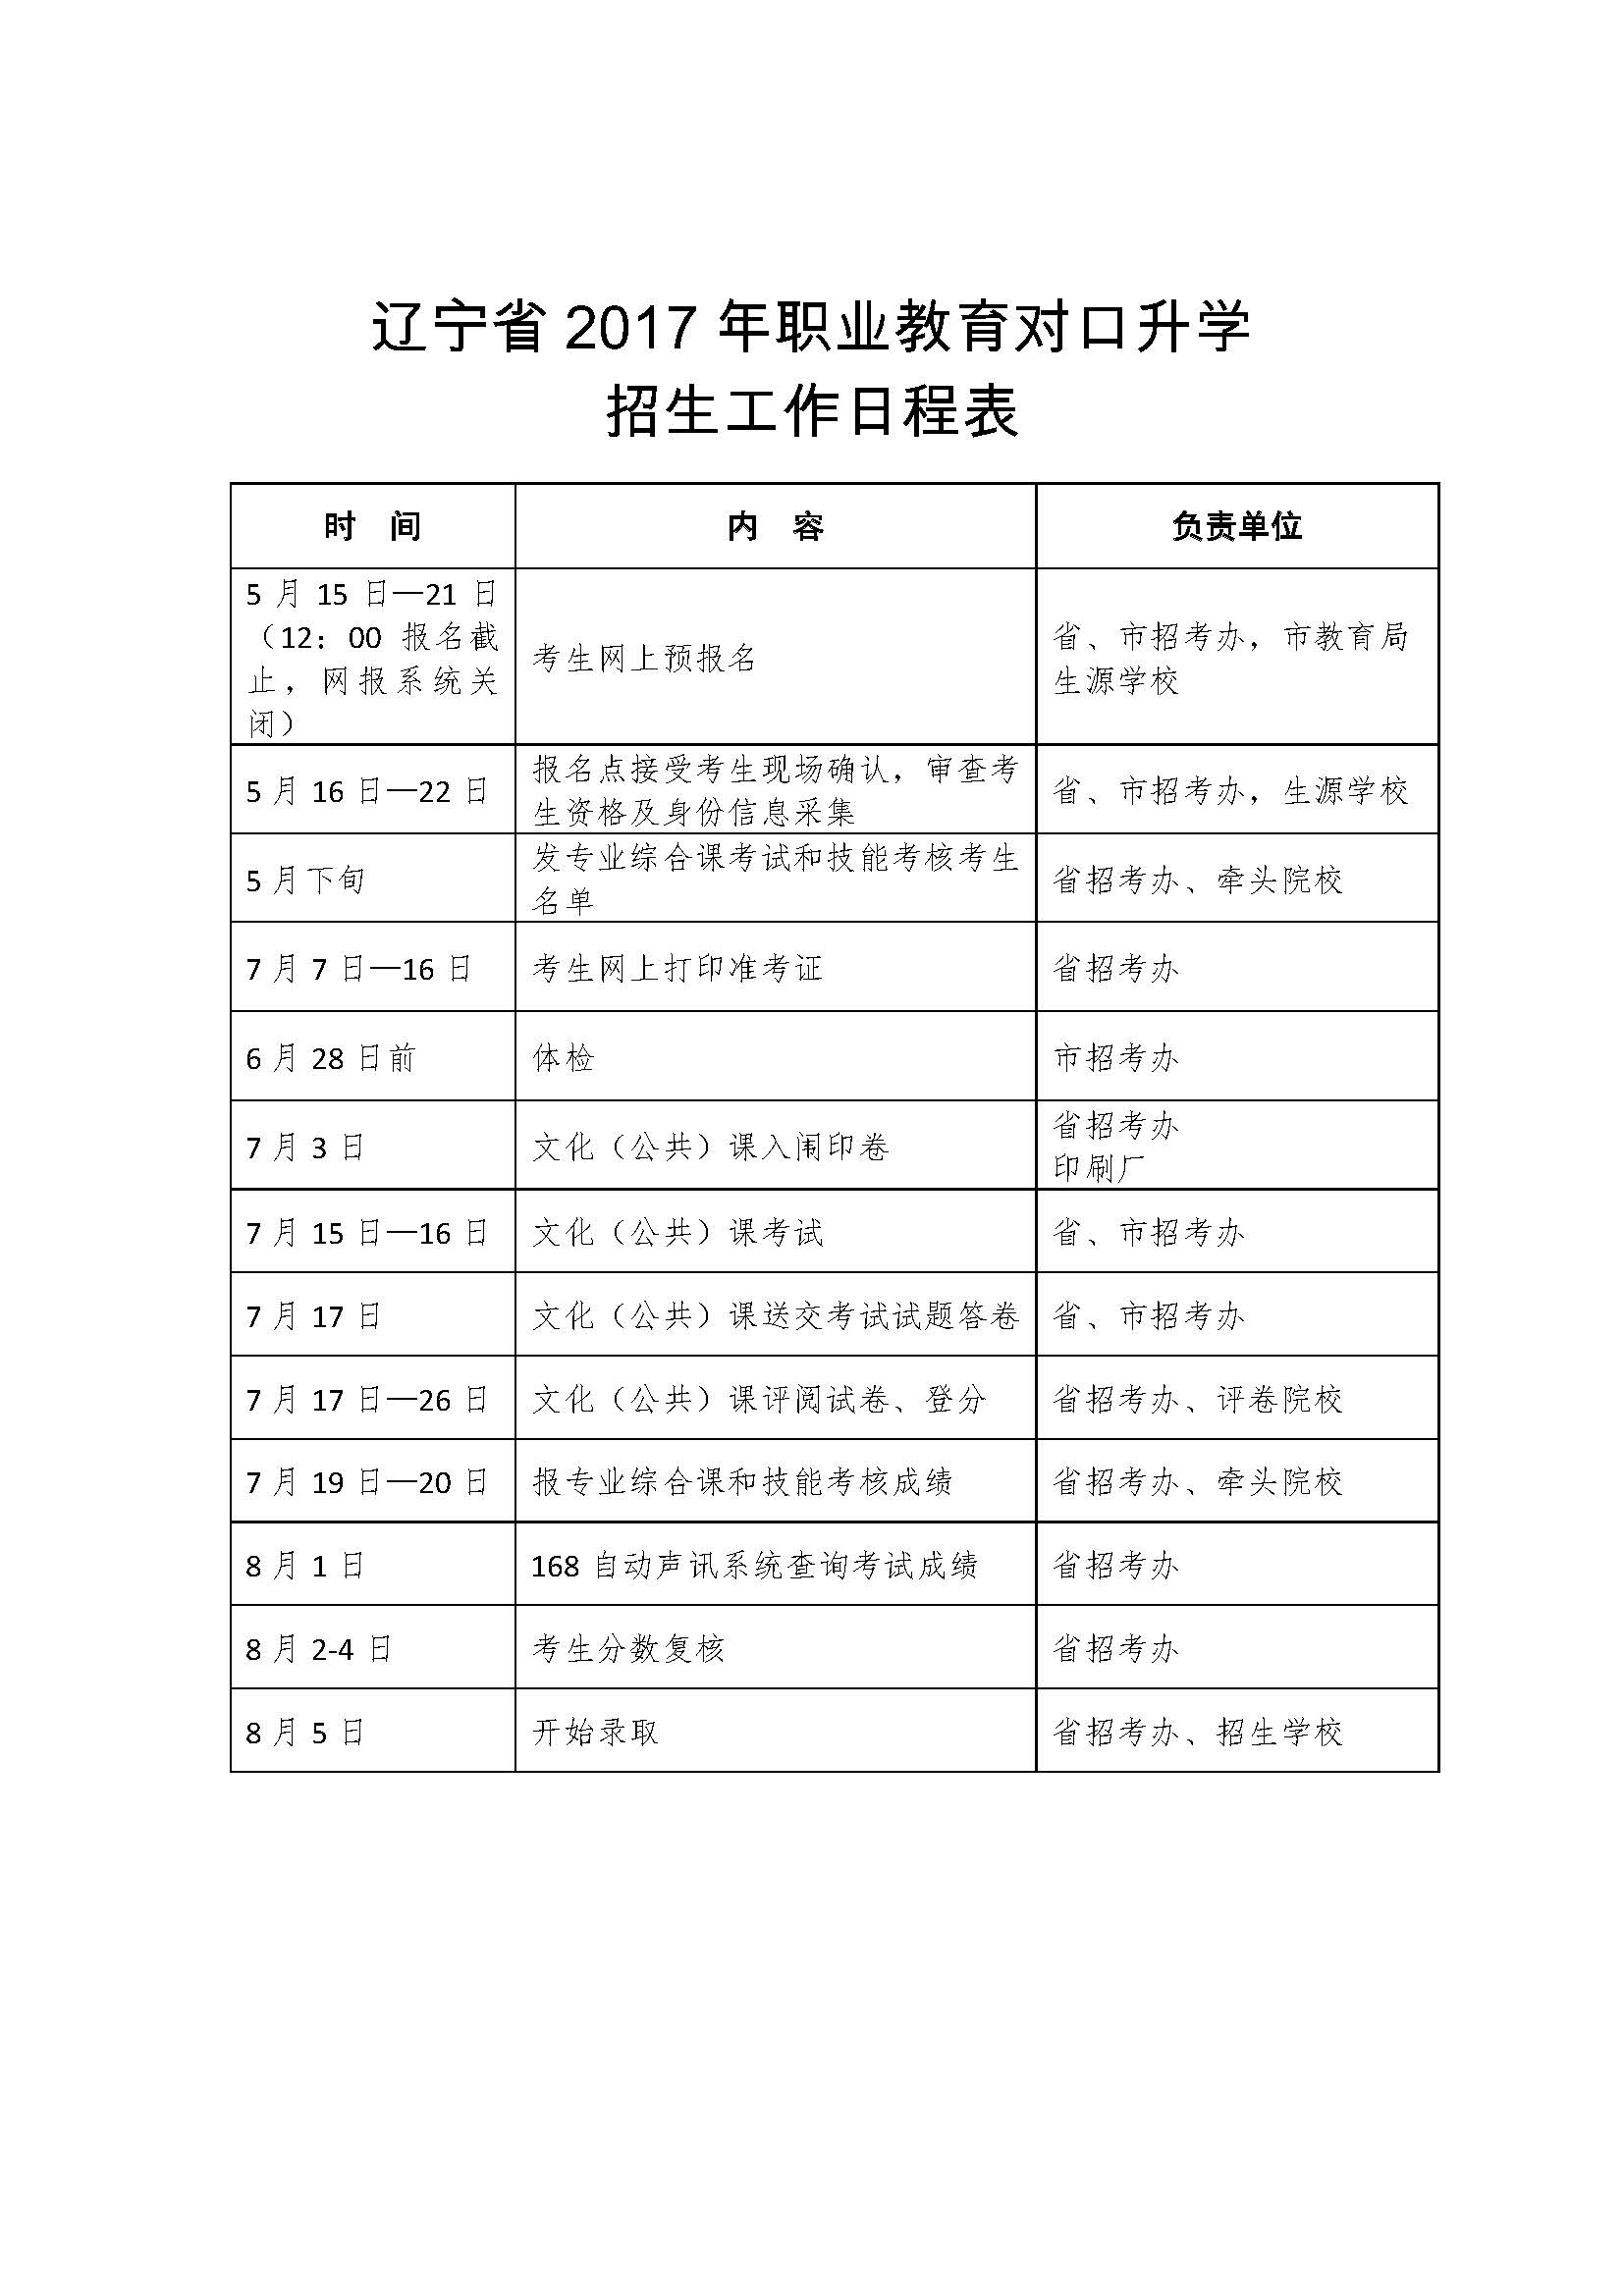 辽宁省2017年职业教育对口升学招生工作日程表